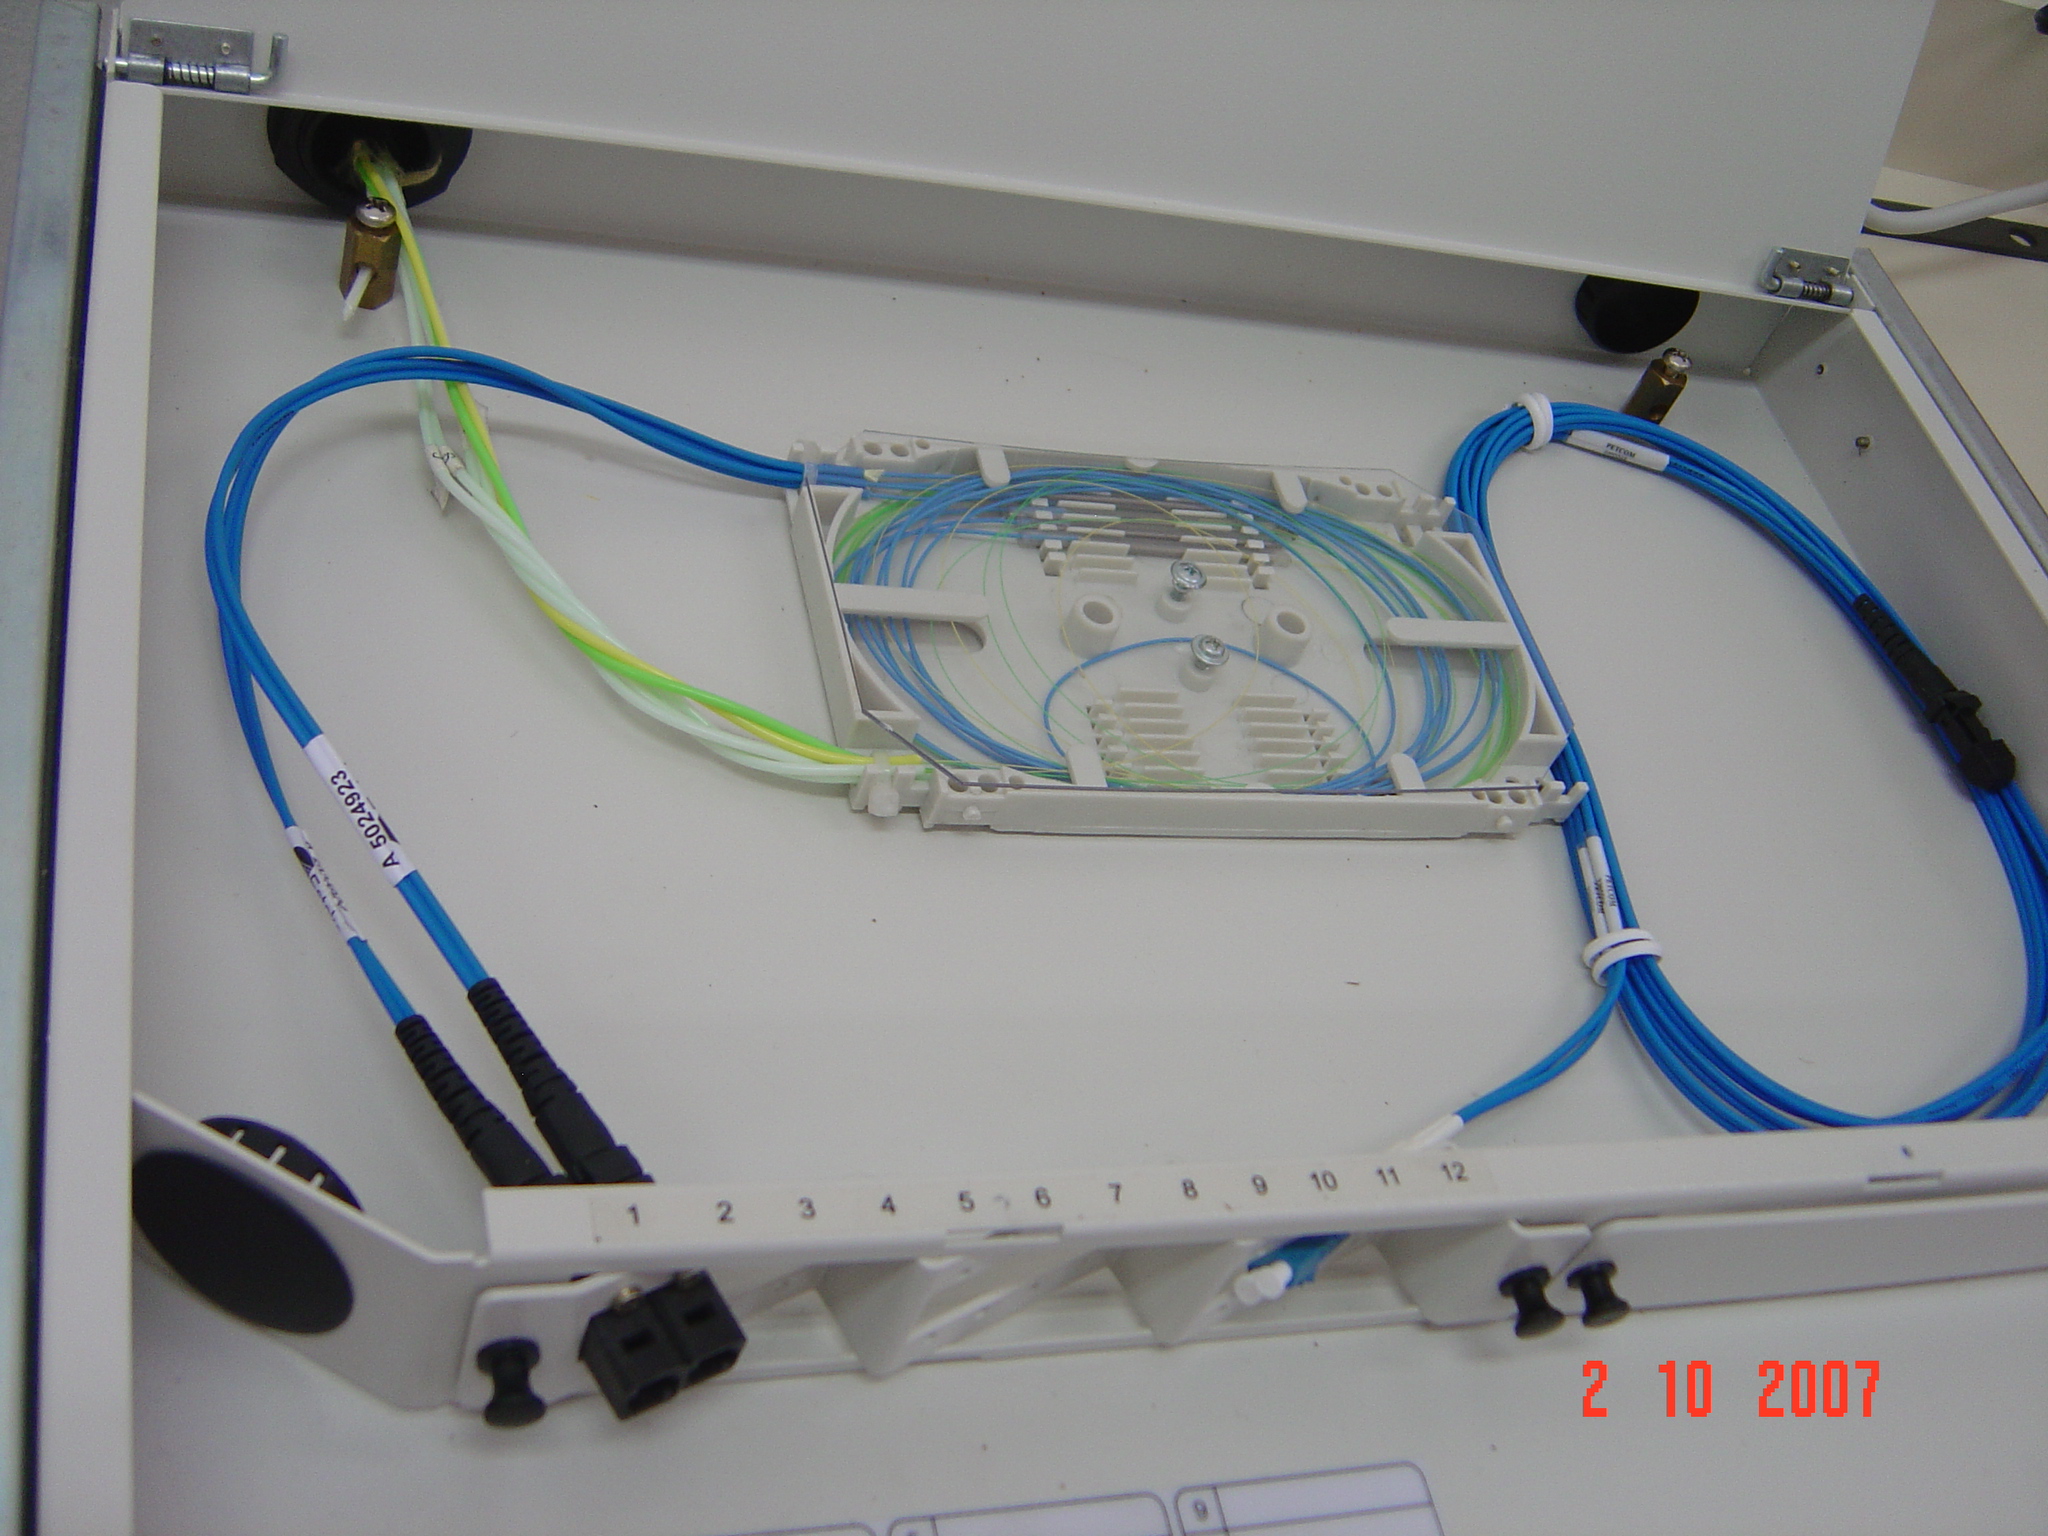 Instalação de um Distribuidor Óptico (DIO)